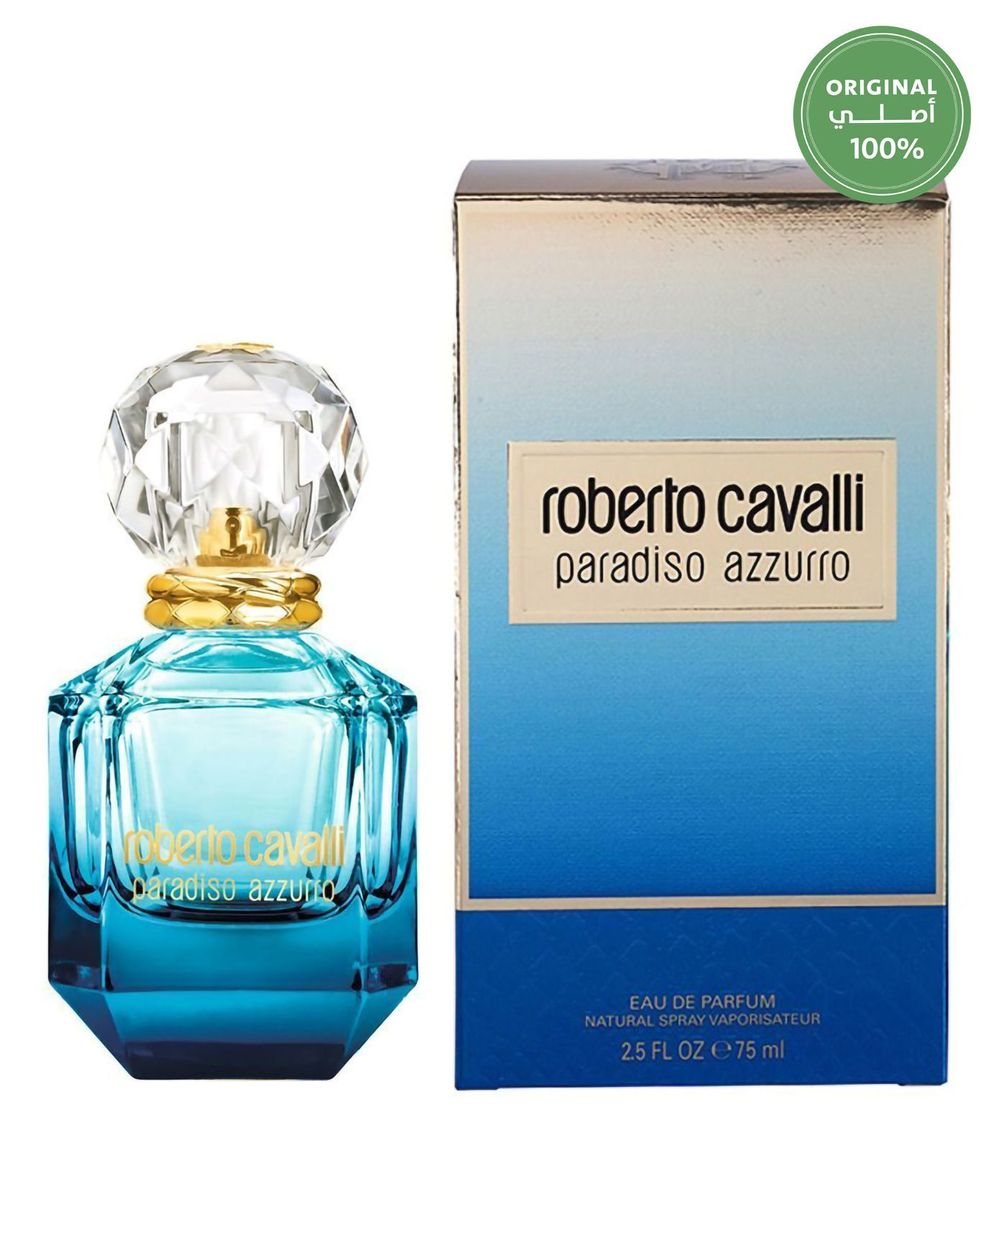 Onderzoek Voordracht Gehoorzaamheid Roberto Cavalli Paradiso Azzurro Women Perfume EDP 75 ml | Buy Women  Perfumes online | Best price and offers | KSA | HNAK.com